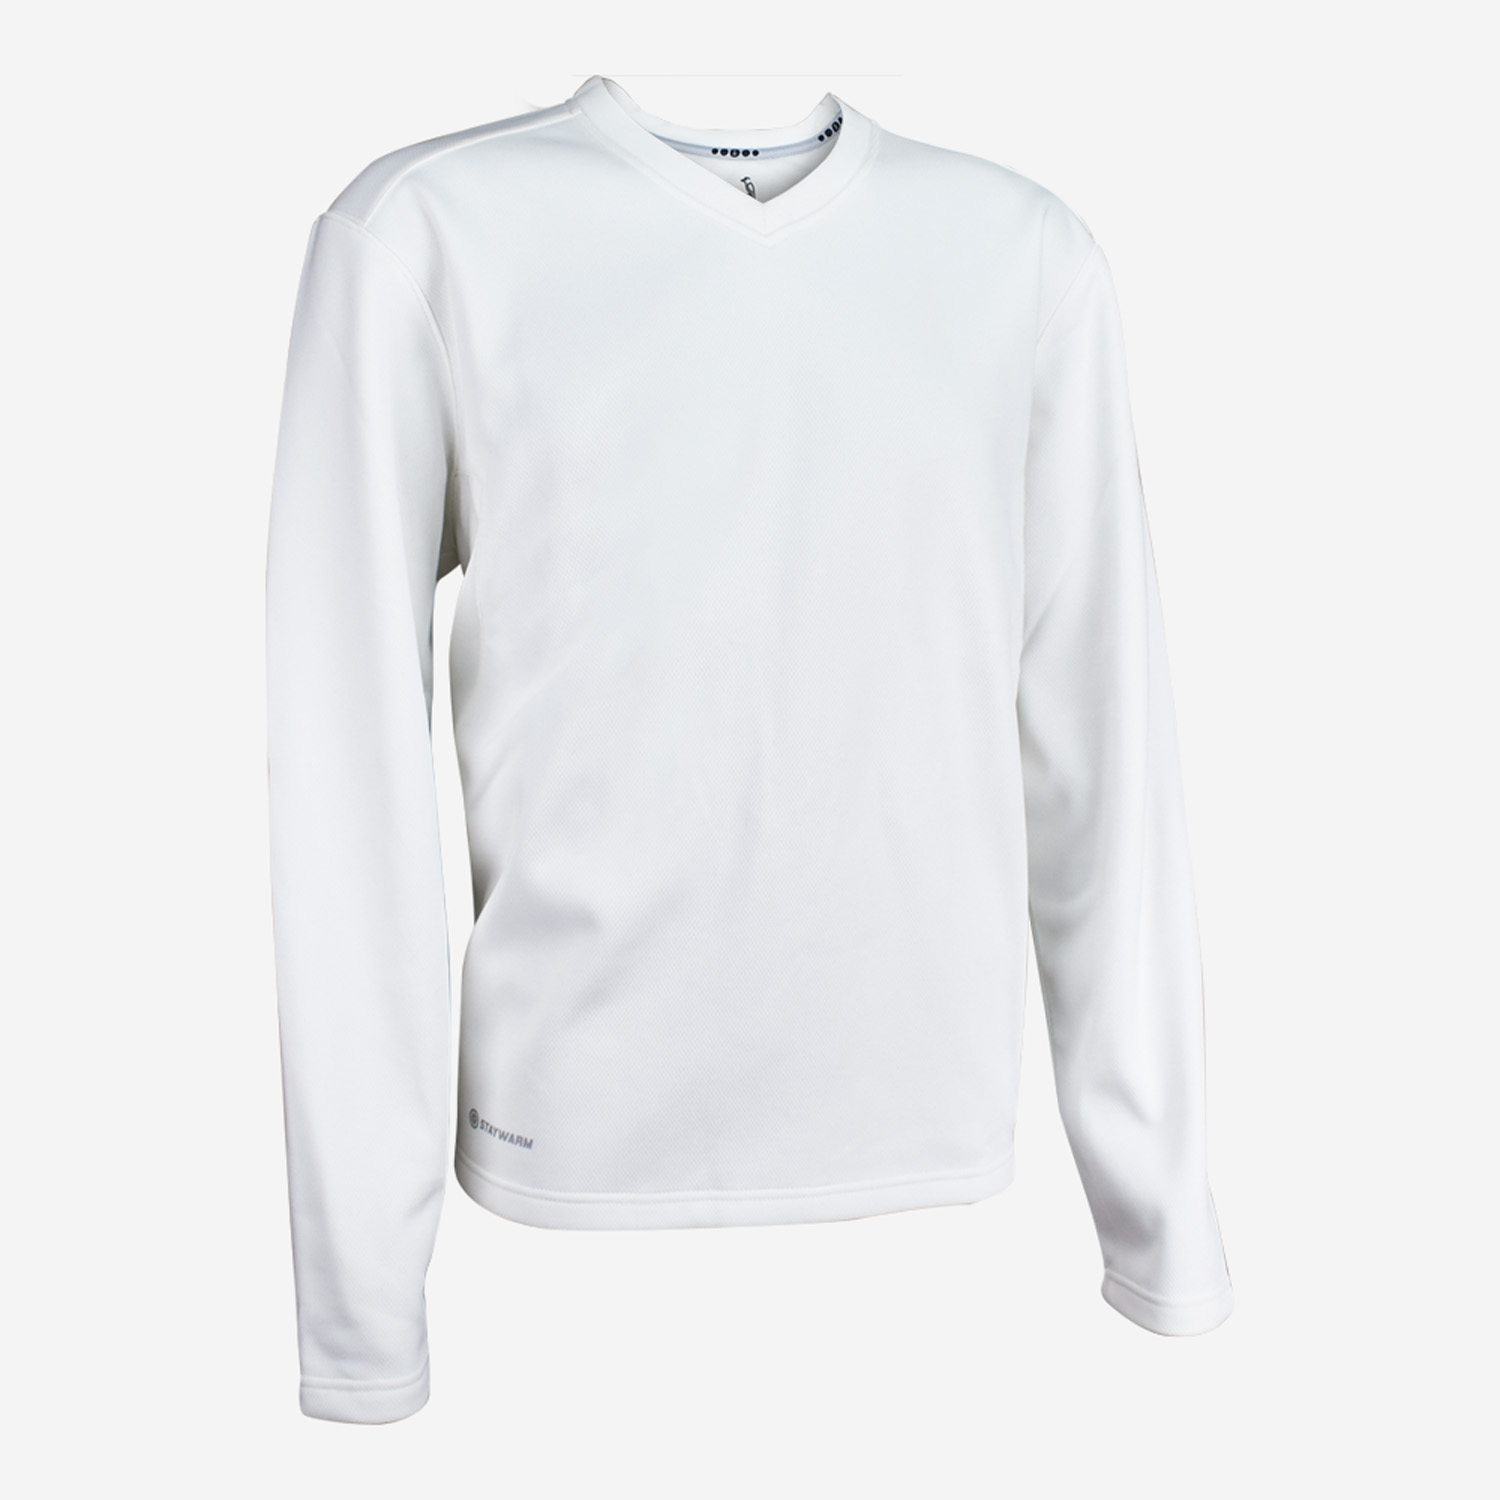 KOOKABURRA Pro Player Senior Sleeveless Cricket Sweater Size S M L XL XXL XXXL 